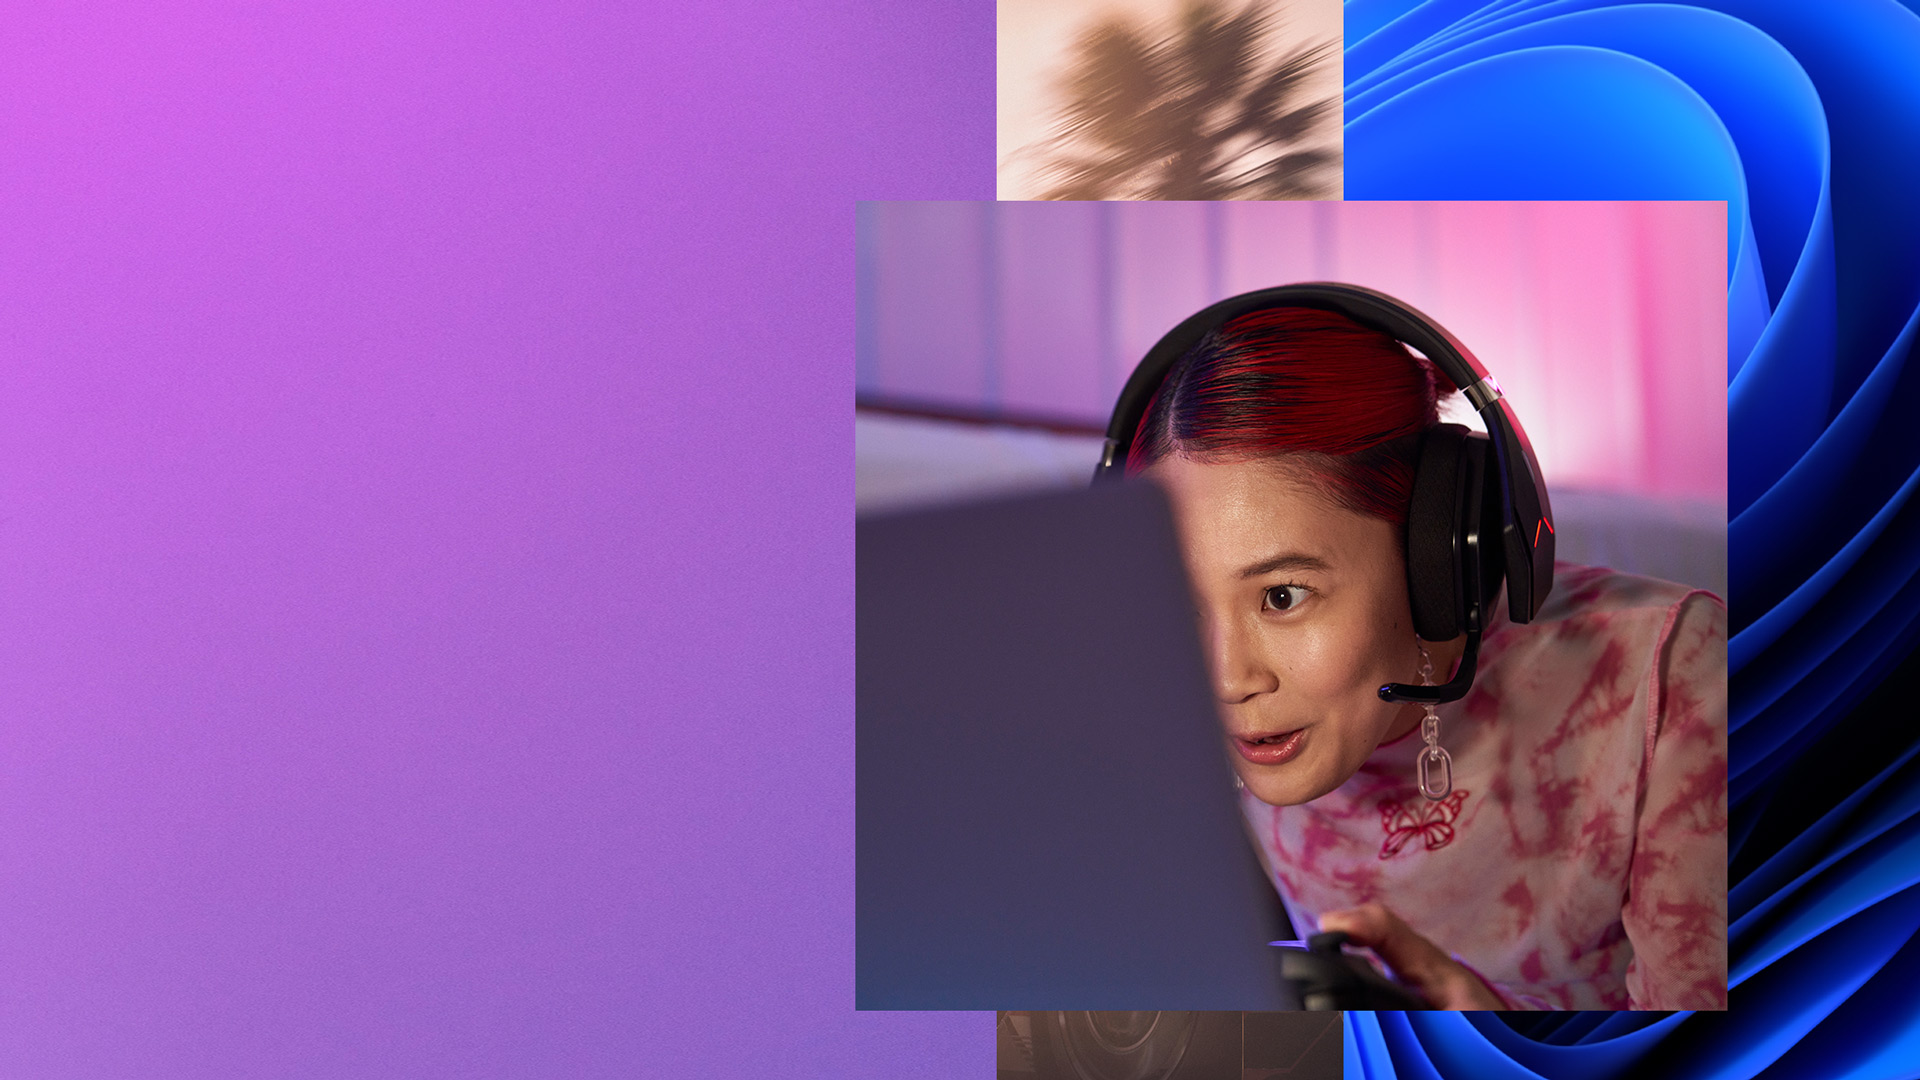 Dziewczyna ze słuchawkami na głowie i kontrolerem w rękach patrząca na ekran swojego komputera